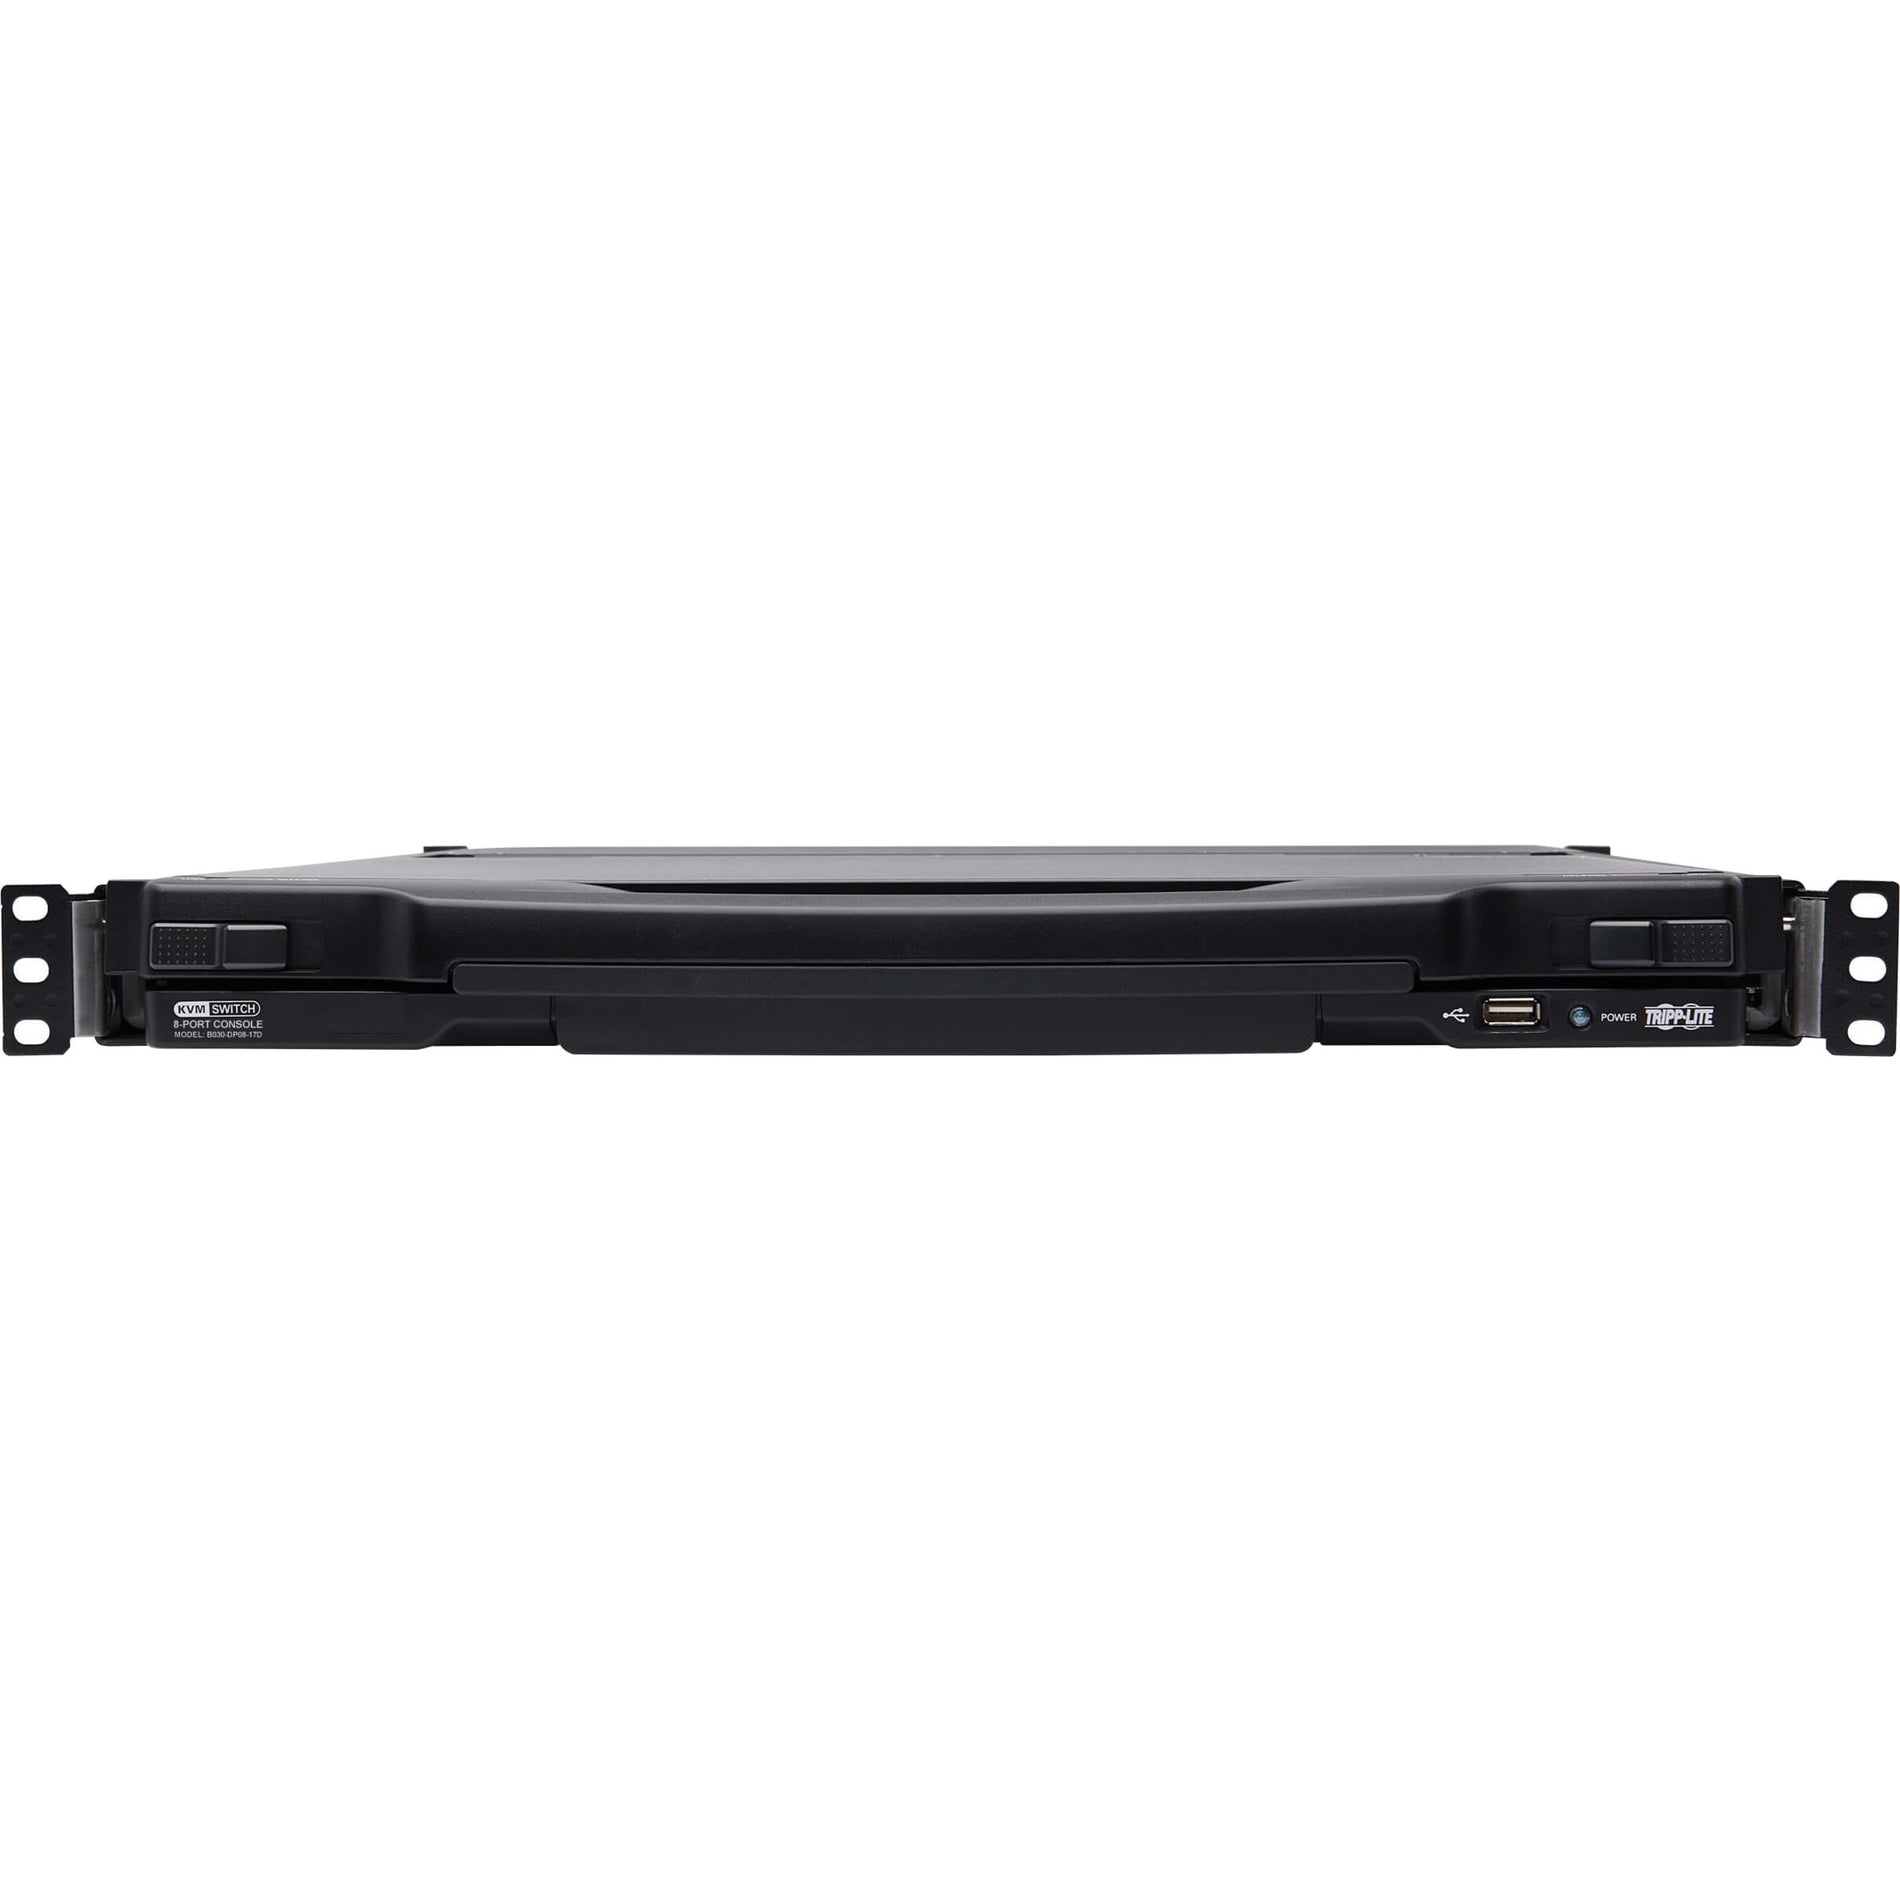 Tripp Lite B030-DP08-17D 8-Port DisplayPort KVM Switch Console, 17" LCD, Full HD, USB, Mac/PC/Linux